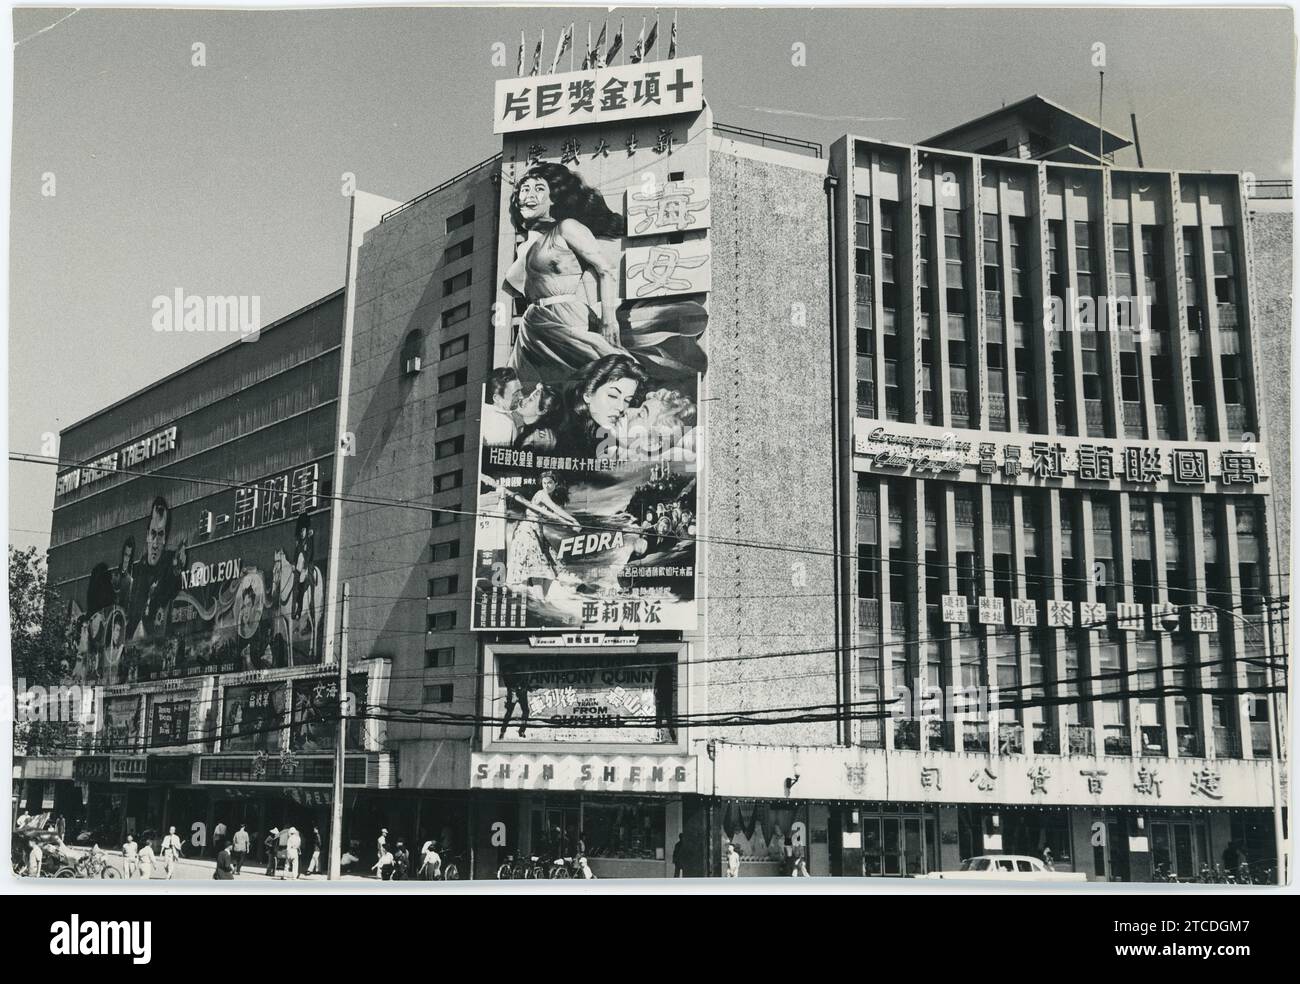 Taipeh (Taiwan), November 1959. Poster für den spanischen Film ?Fedra? An der Hauptfassade des Shin Shen Kinos. Quelle: Album/Archivo ABC Stockfoto